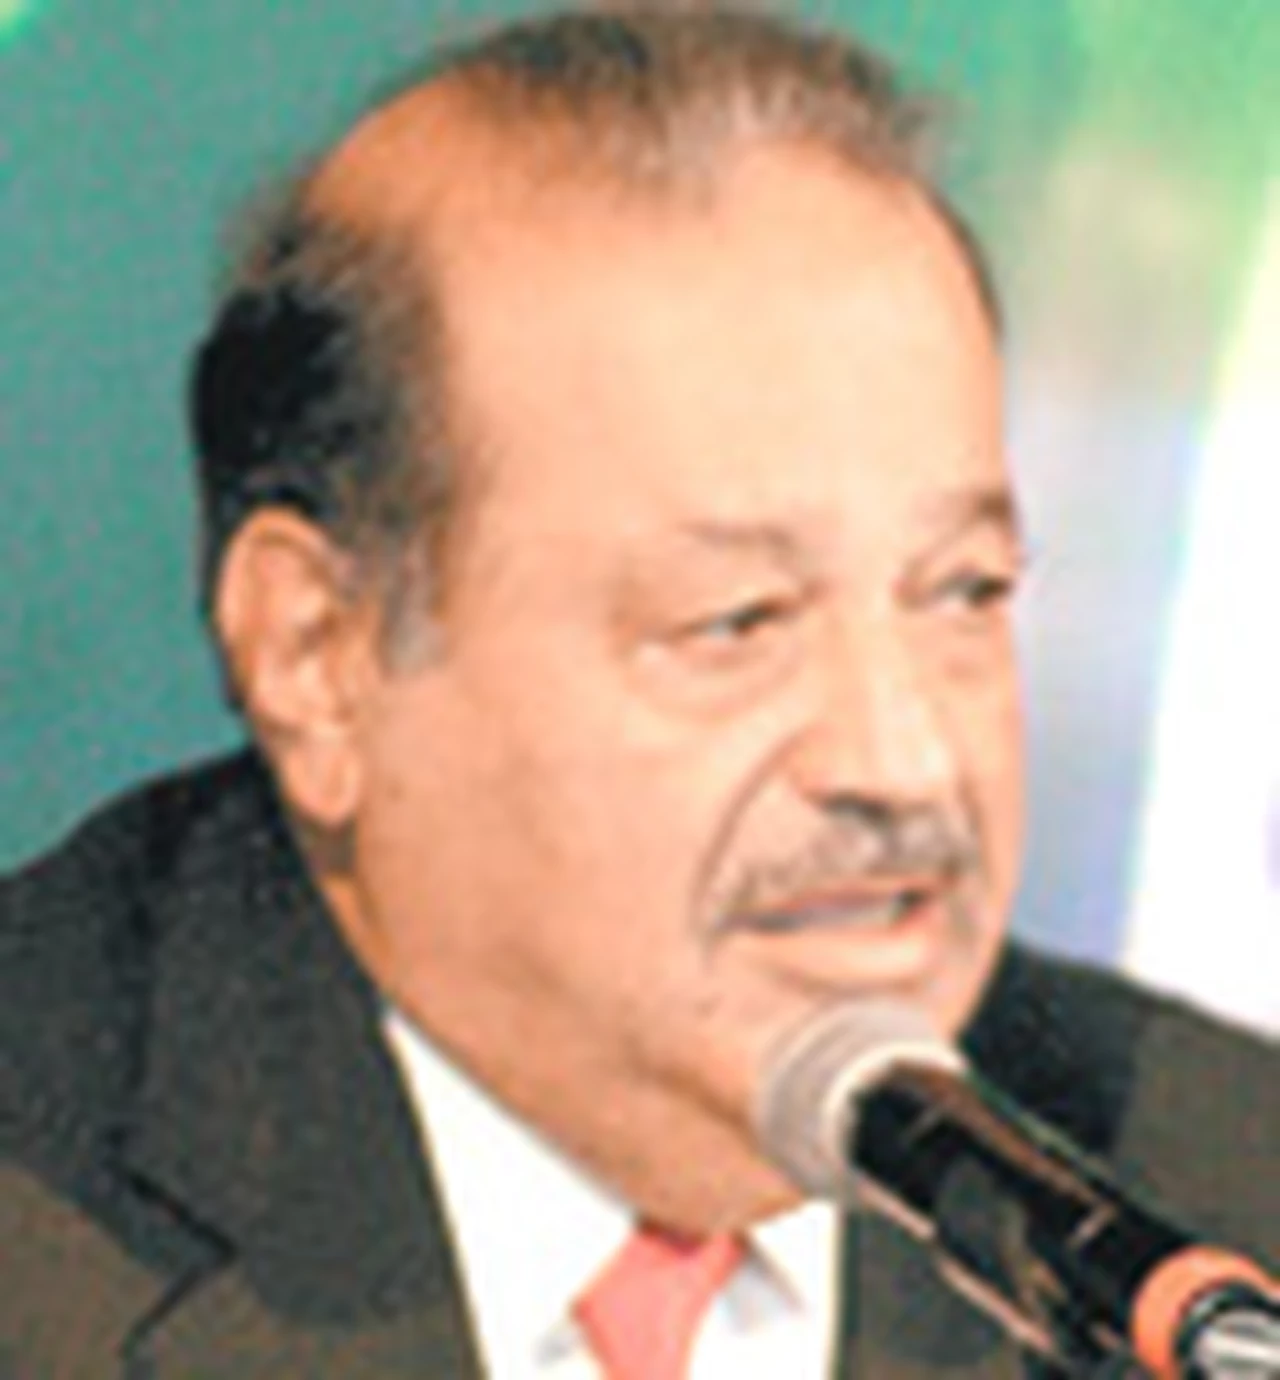 El empresario Carlos Slim apuesta a los biocombustibles